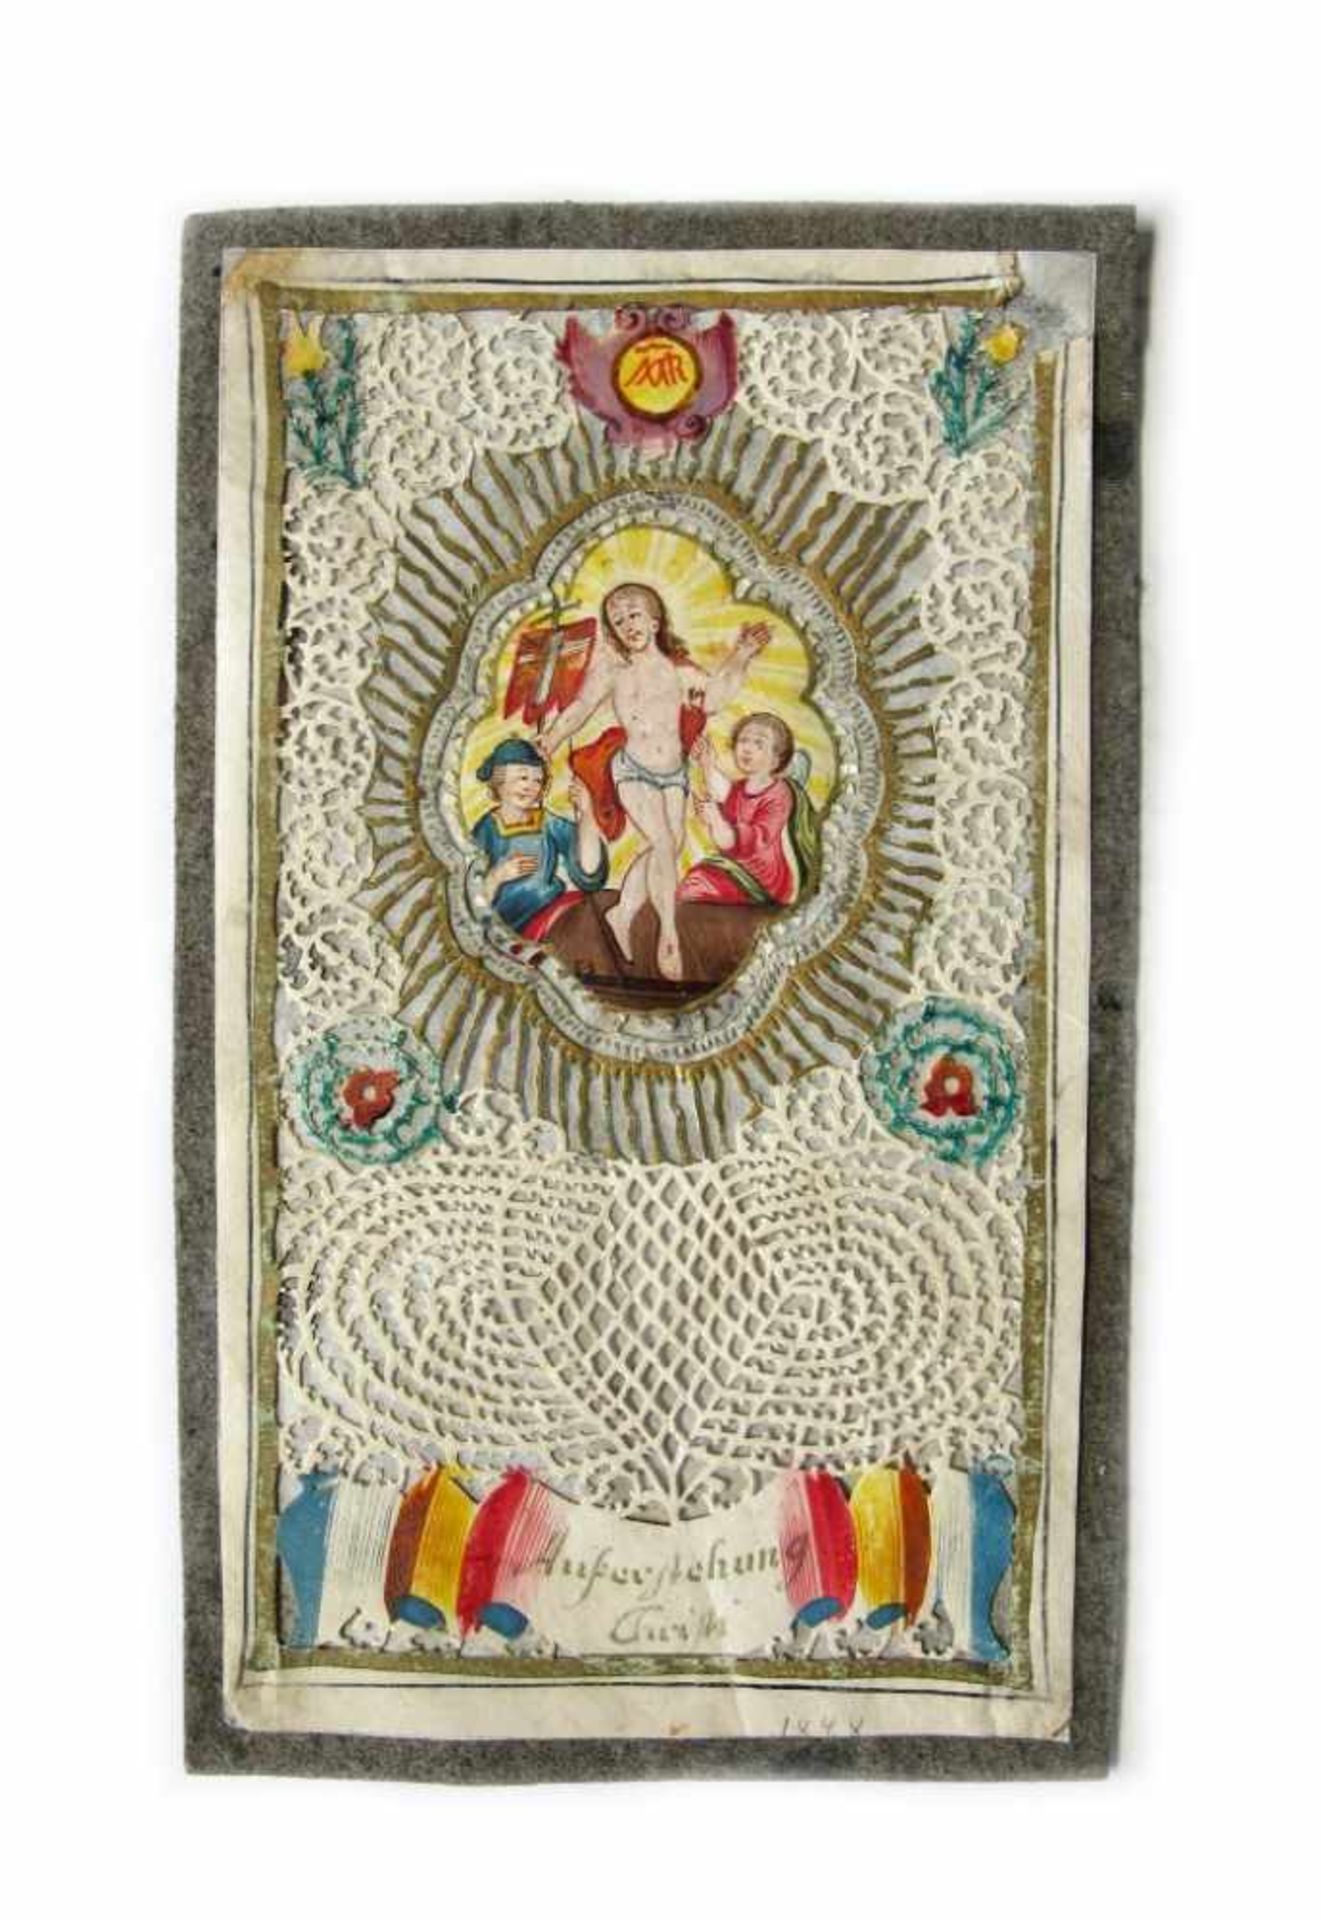 Feines Spitzenbild. Polychrome Miniatur mit Christi Auferstehung. Feine filigrane Arbeit. Anf. 19.